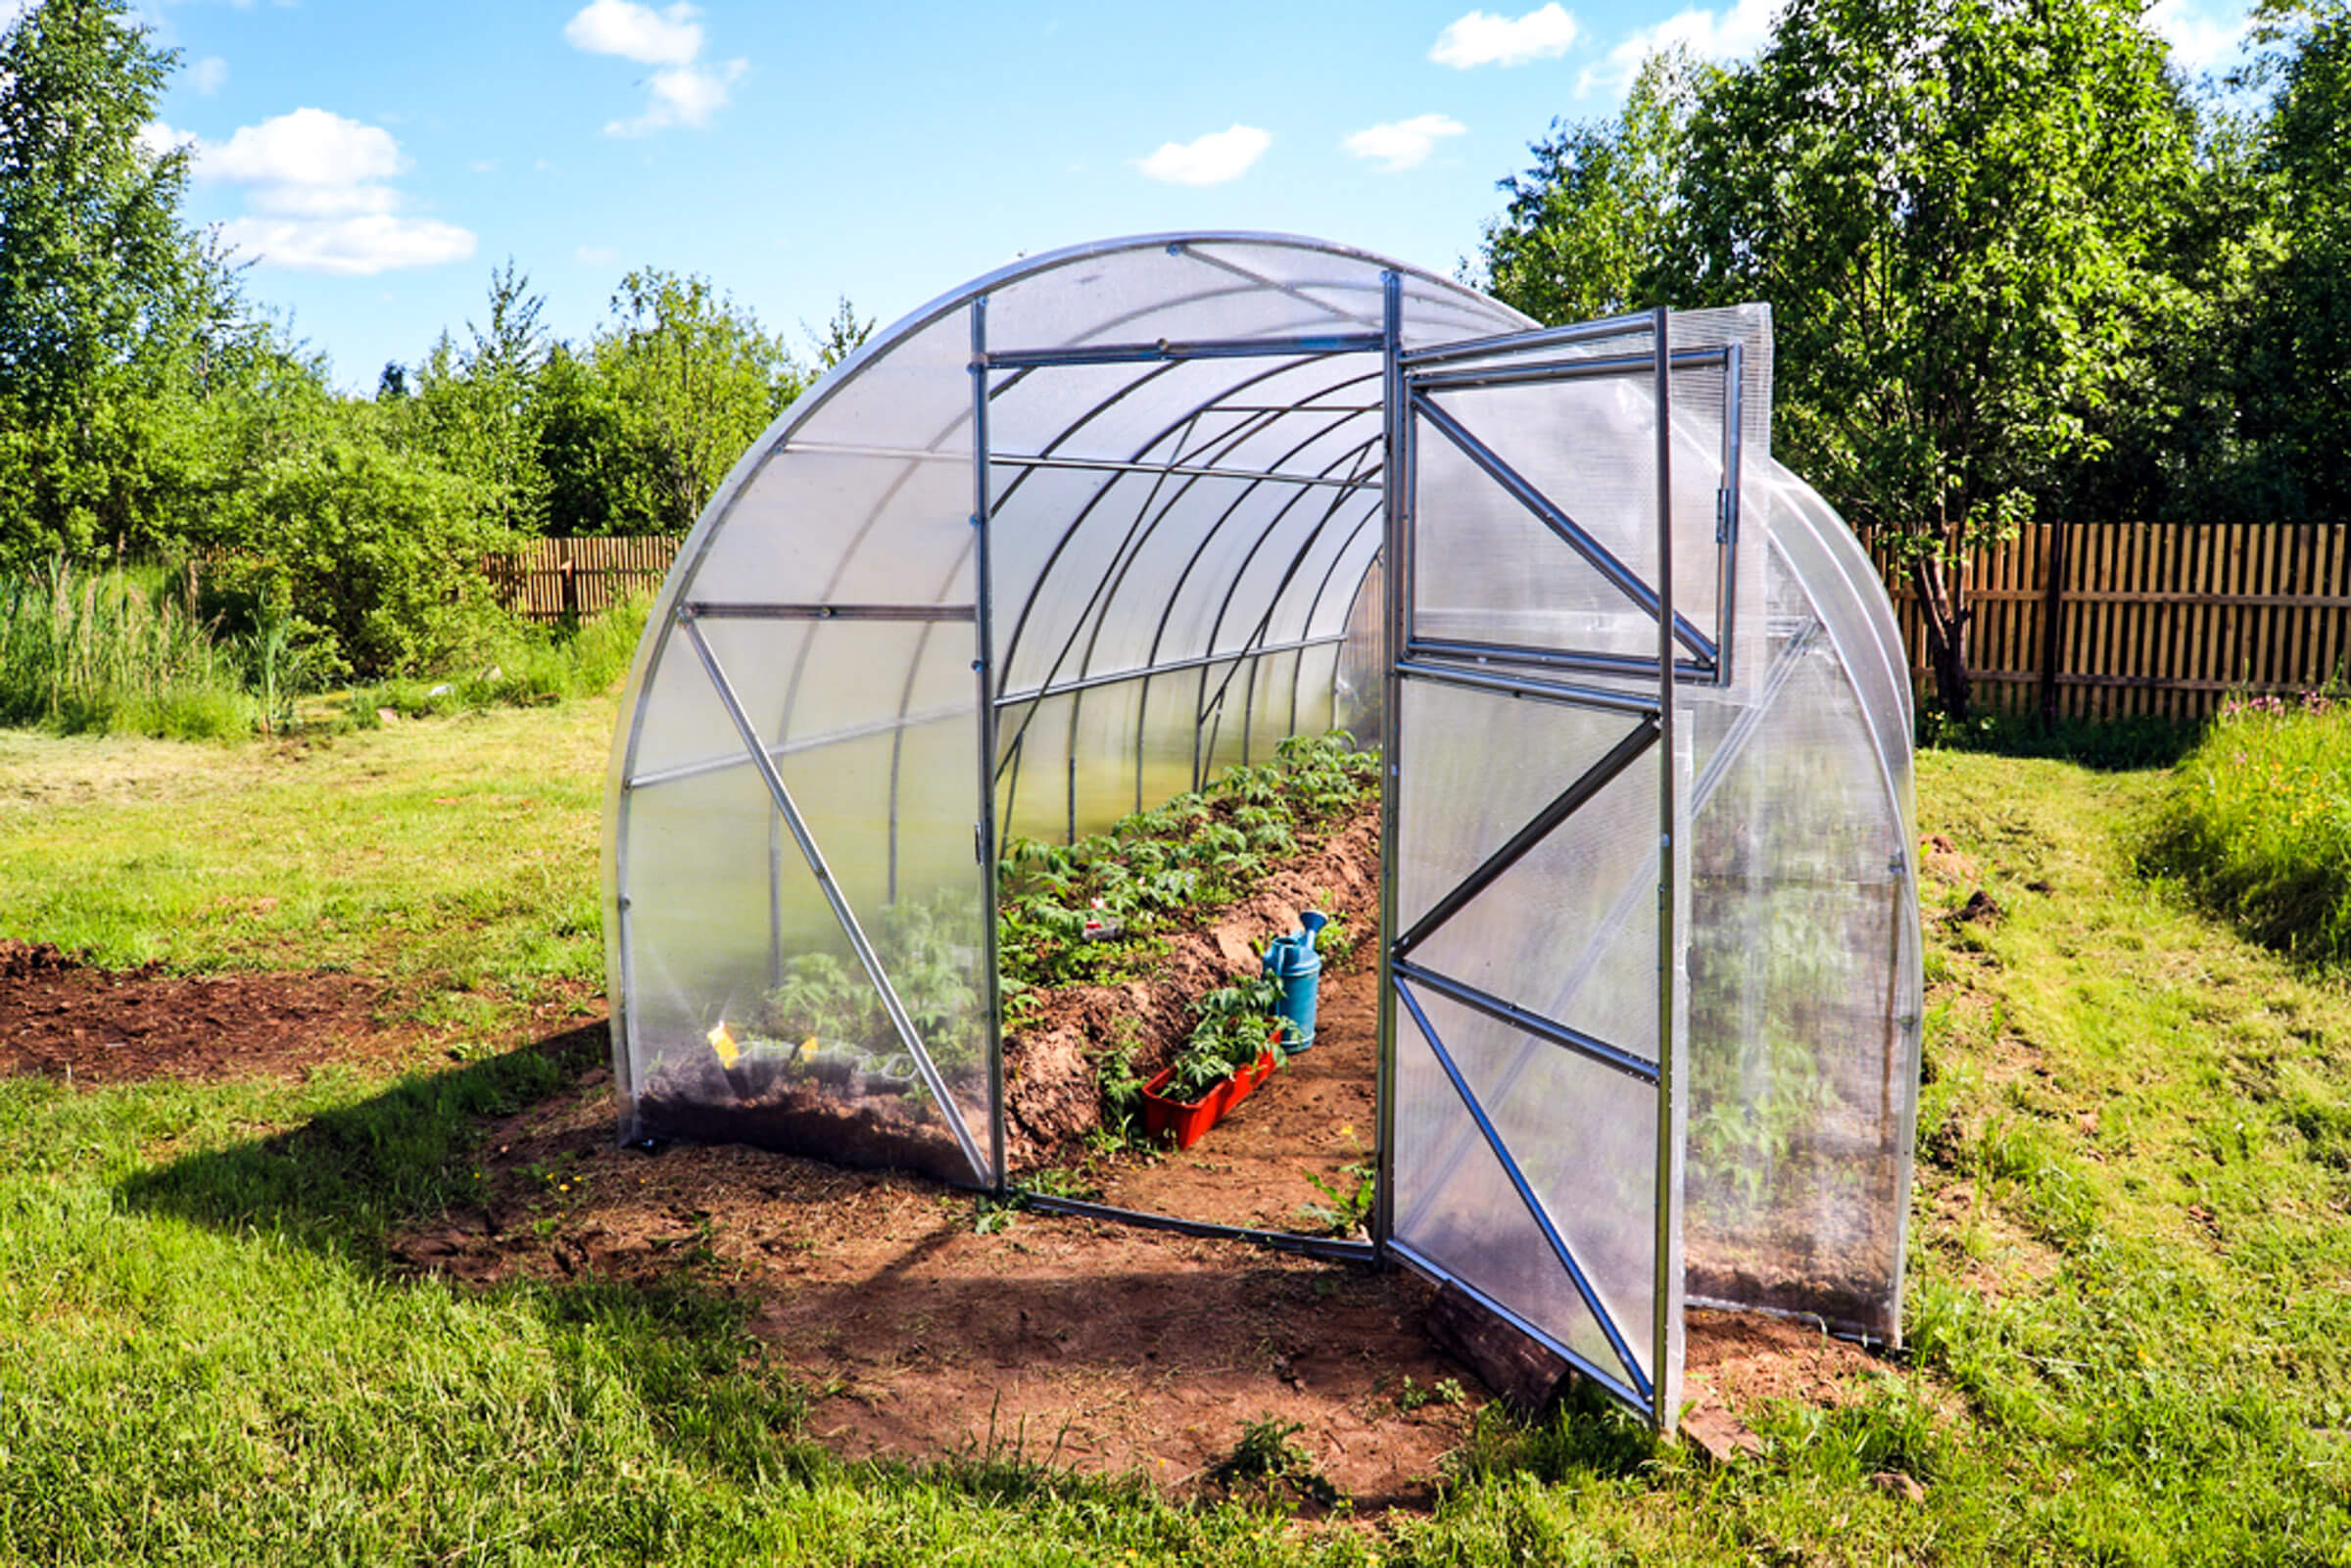 hoop-greenhouse-on-farm-in-field